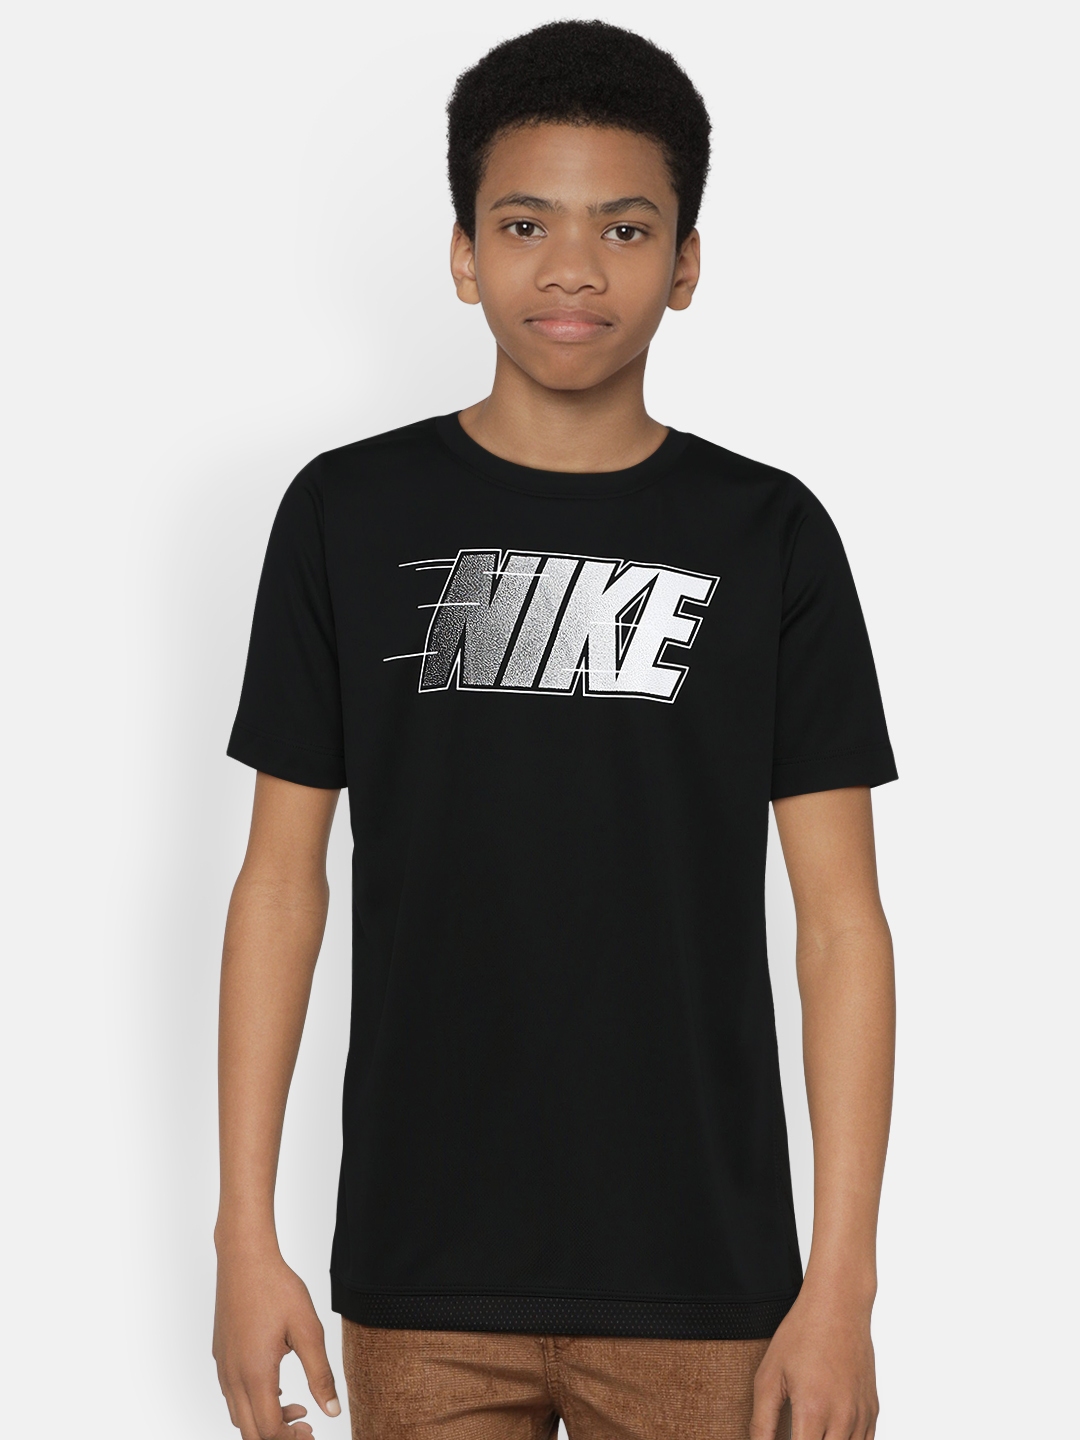 Buy Nike Boys Black Printed Round Neck T Shirt - Tshirts for Boys ...